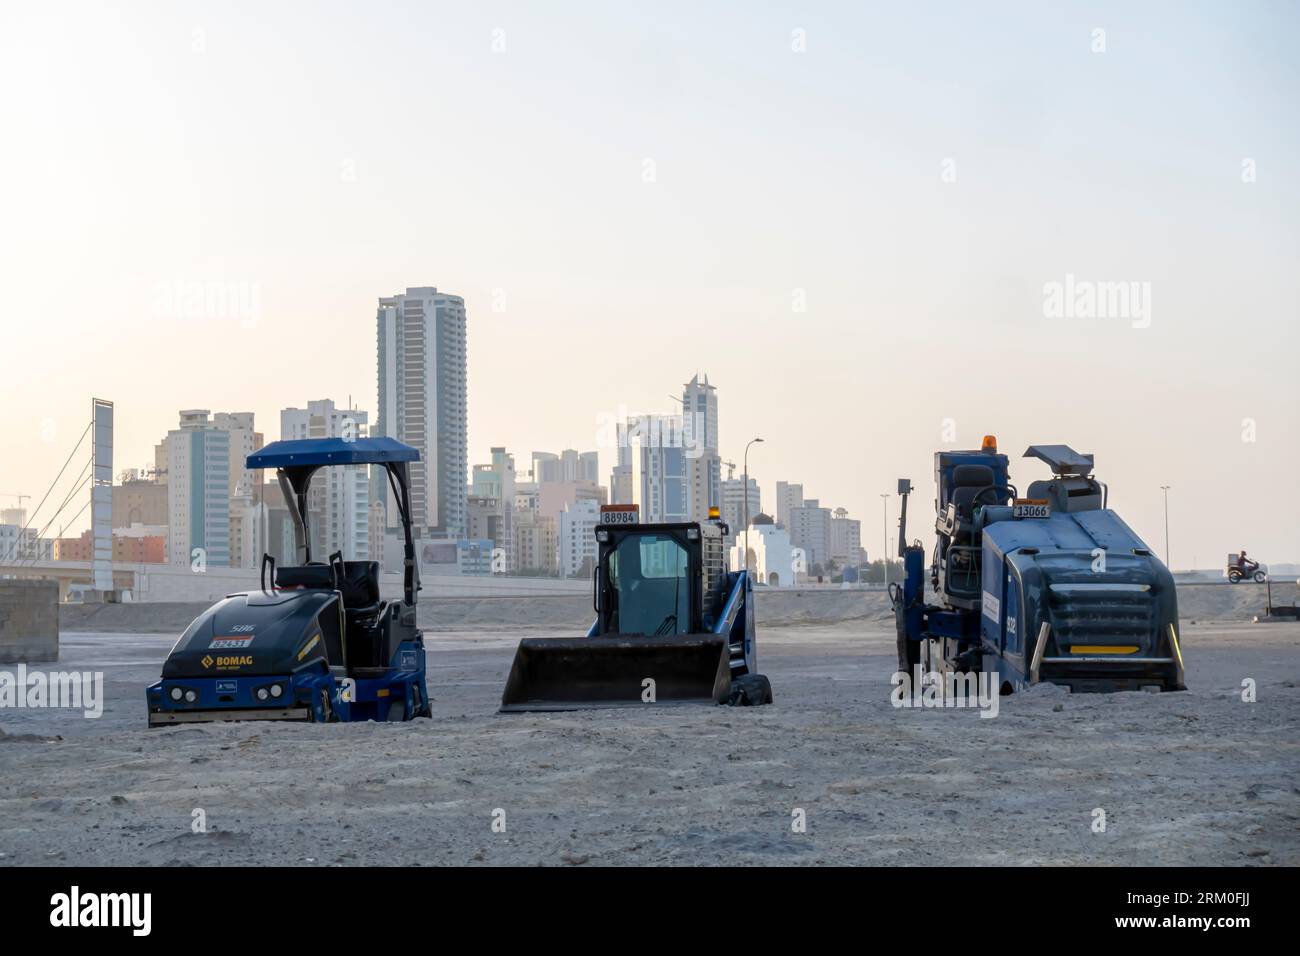 Baustelle im Sand von Jaffair Bahrain, Baumaschinen, Straßenfertiger, Straßenrollfahrzeuge, Straßenwalzen. Stockfoto